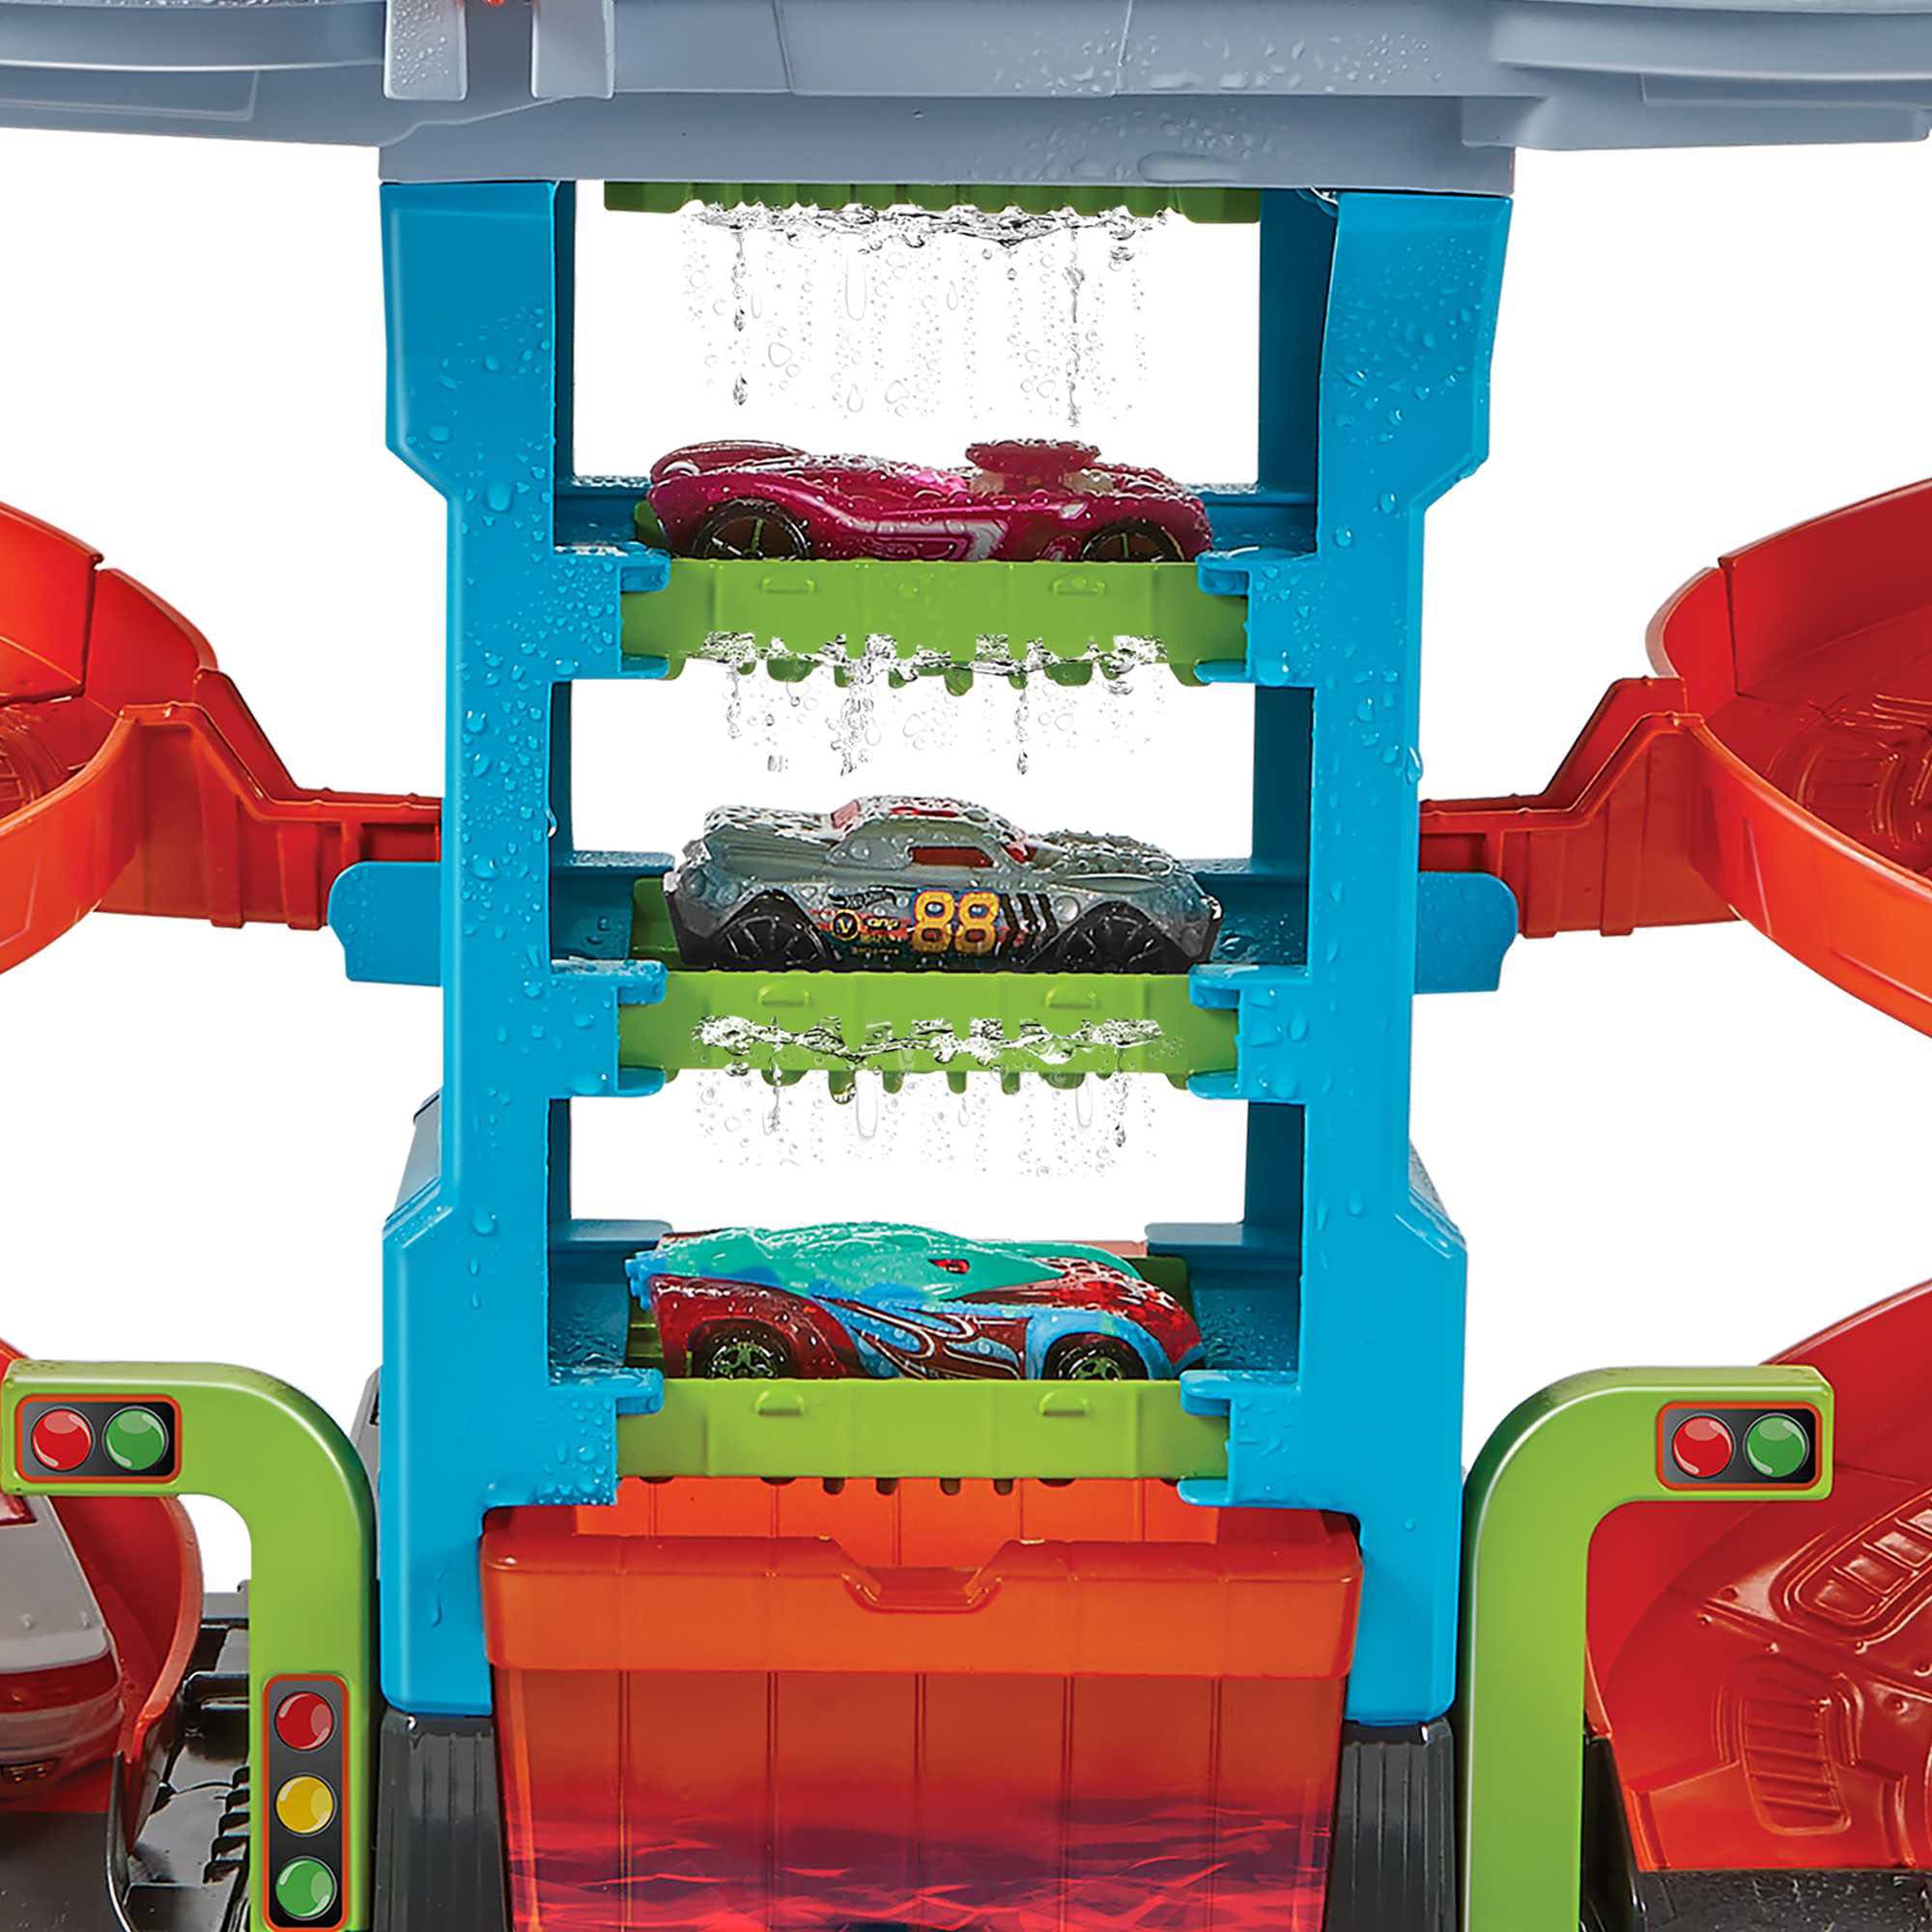 Hot Wheels Spiel-Parkgarage »City Mega Farbwechsel Auto-Waschanlage«, inklusive 1 Spielzeugauto